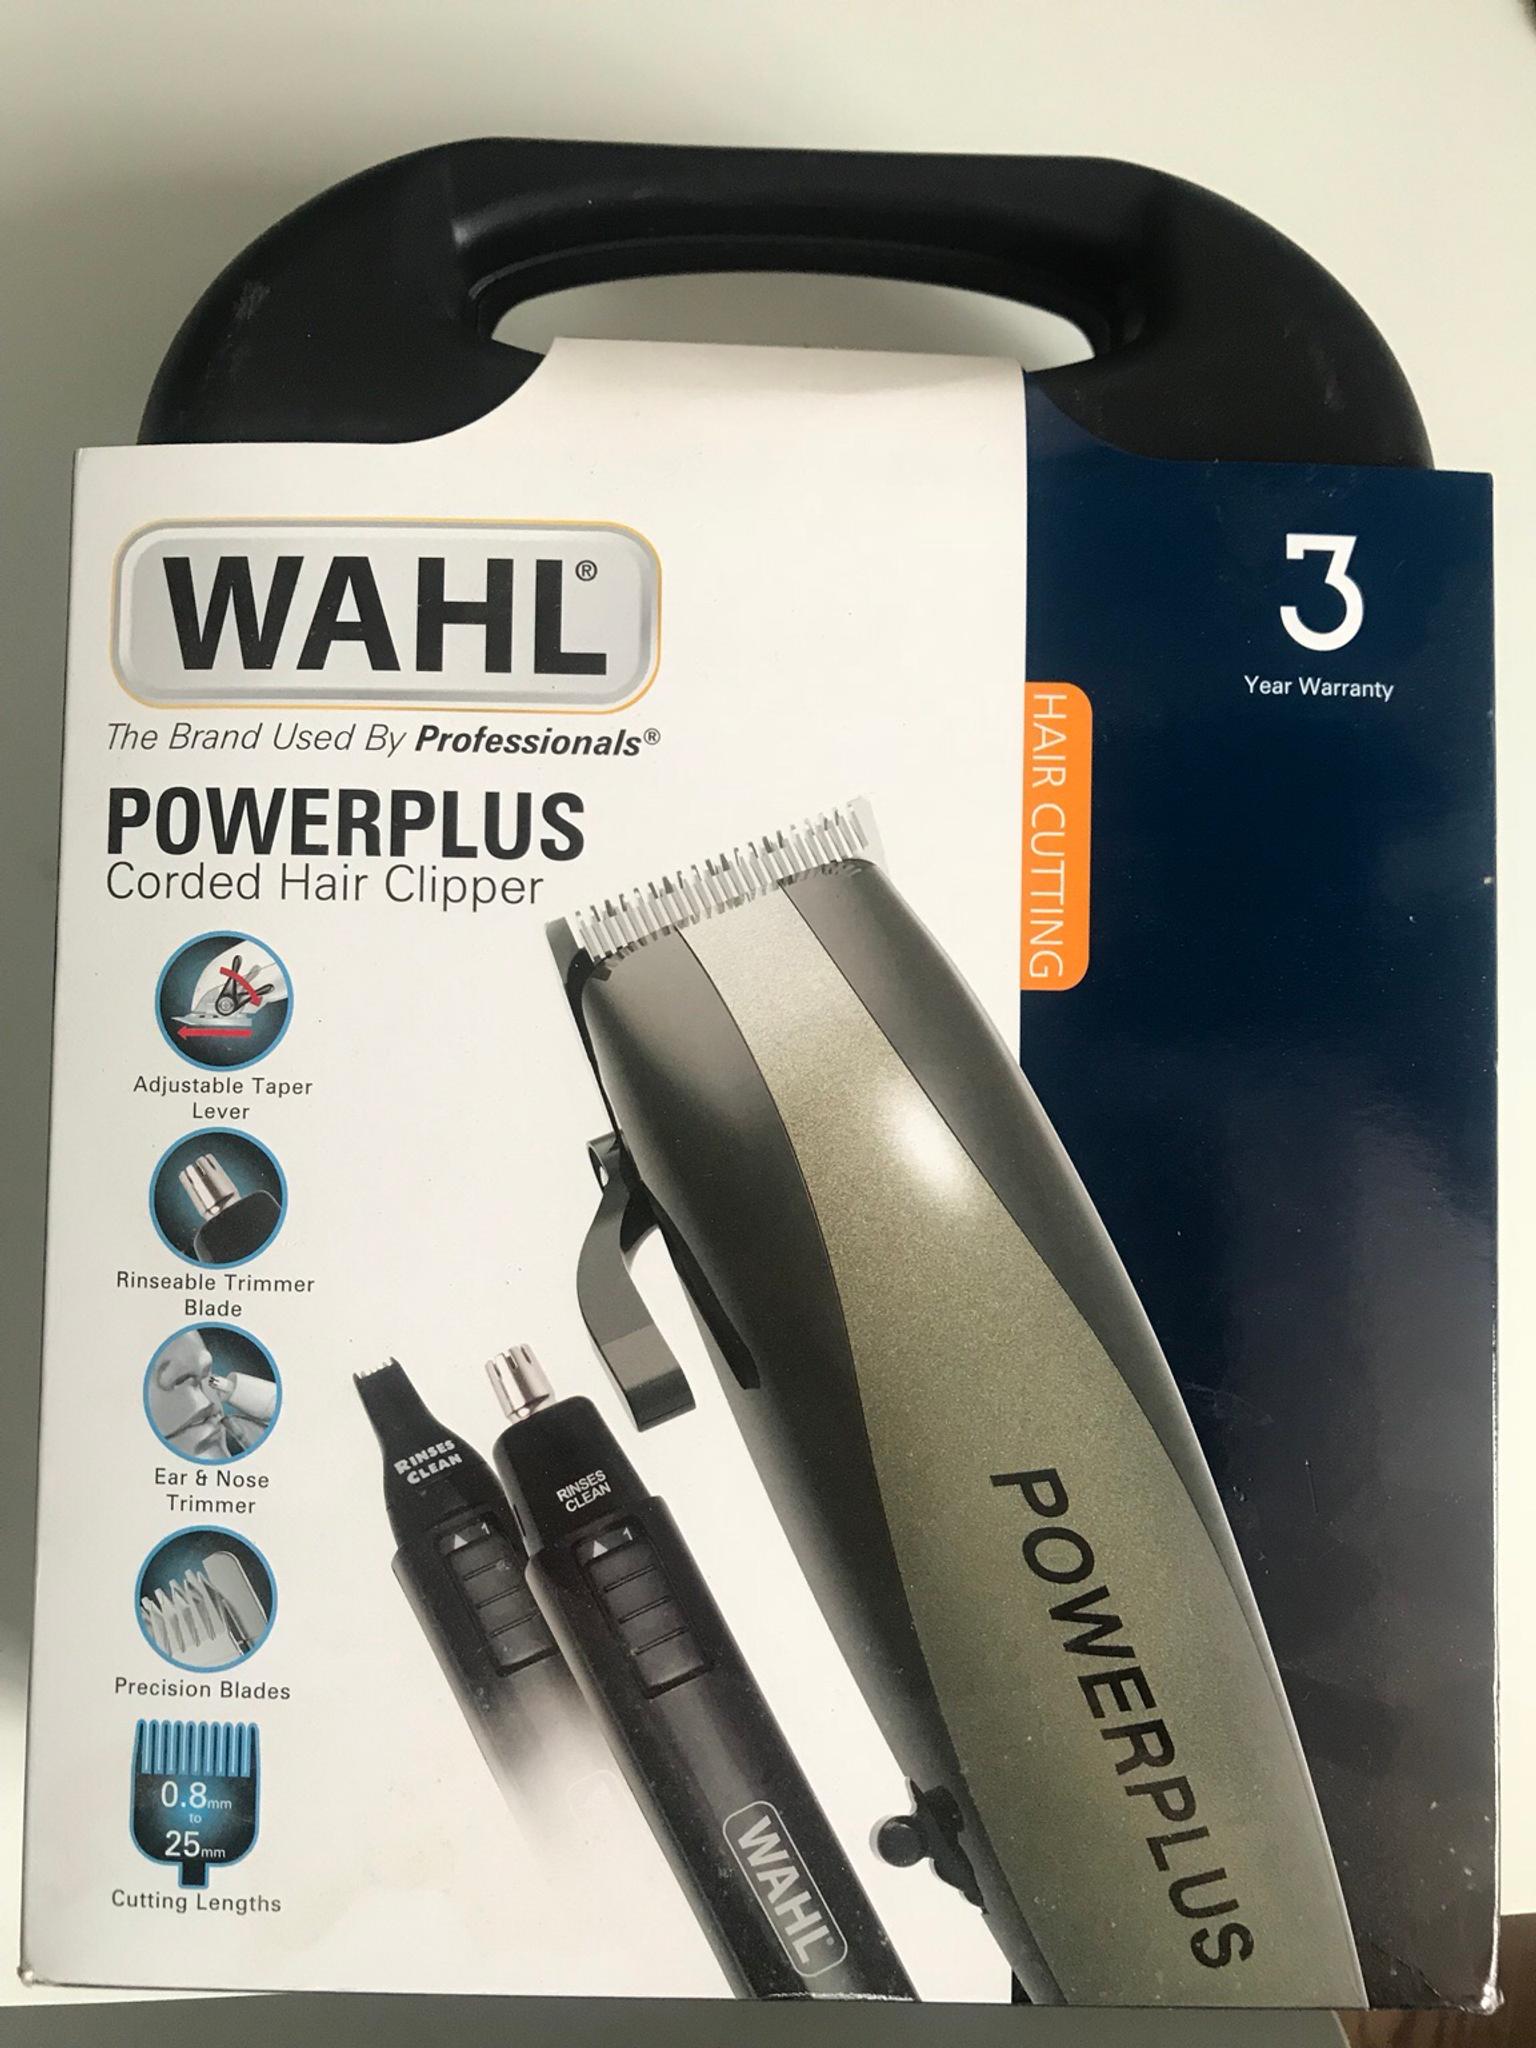 wahl powerplus hair clipper reviews